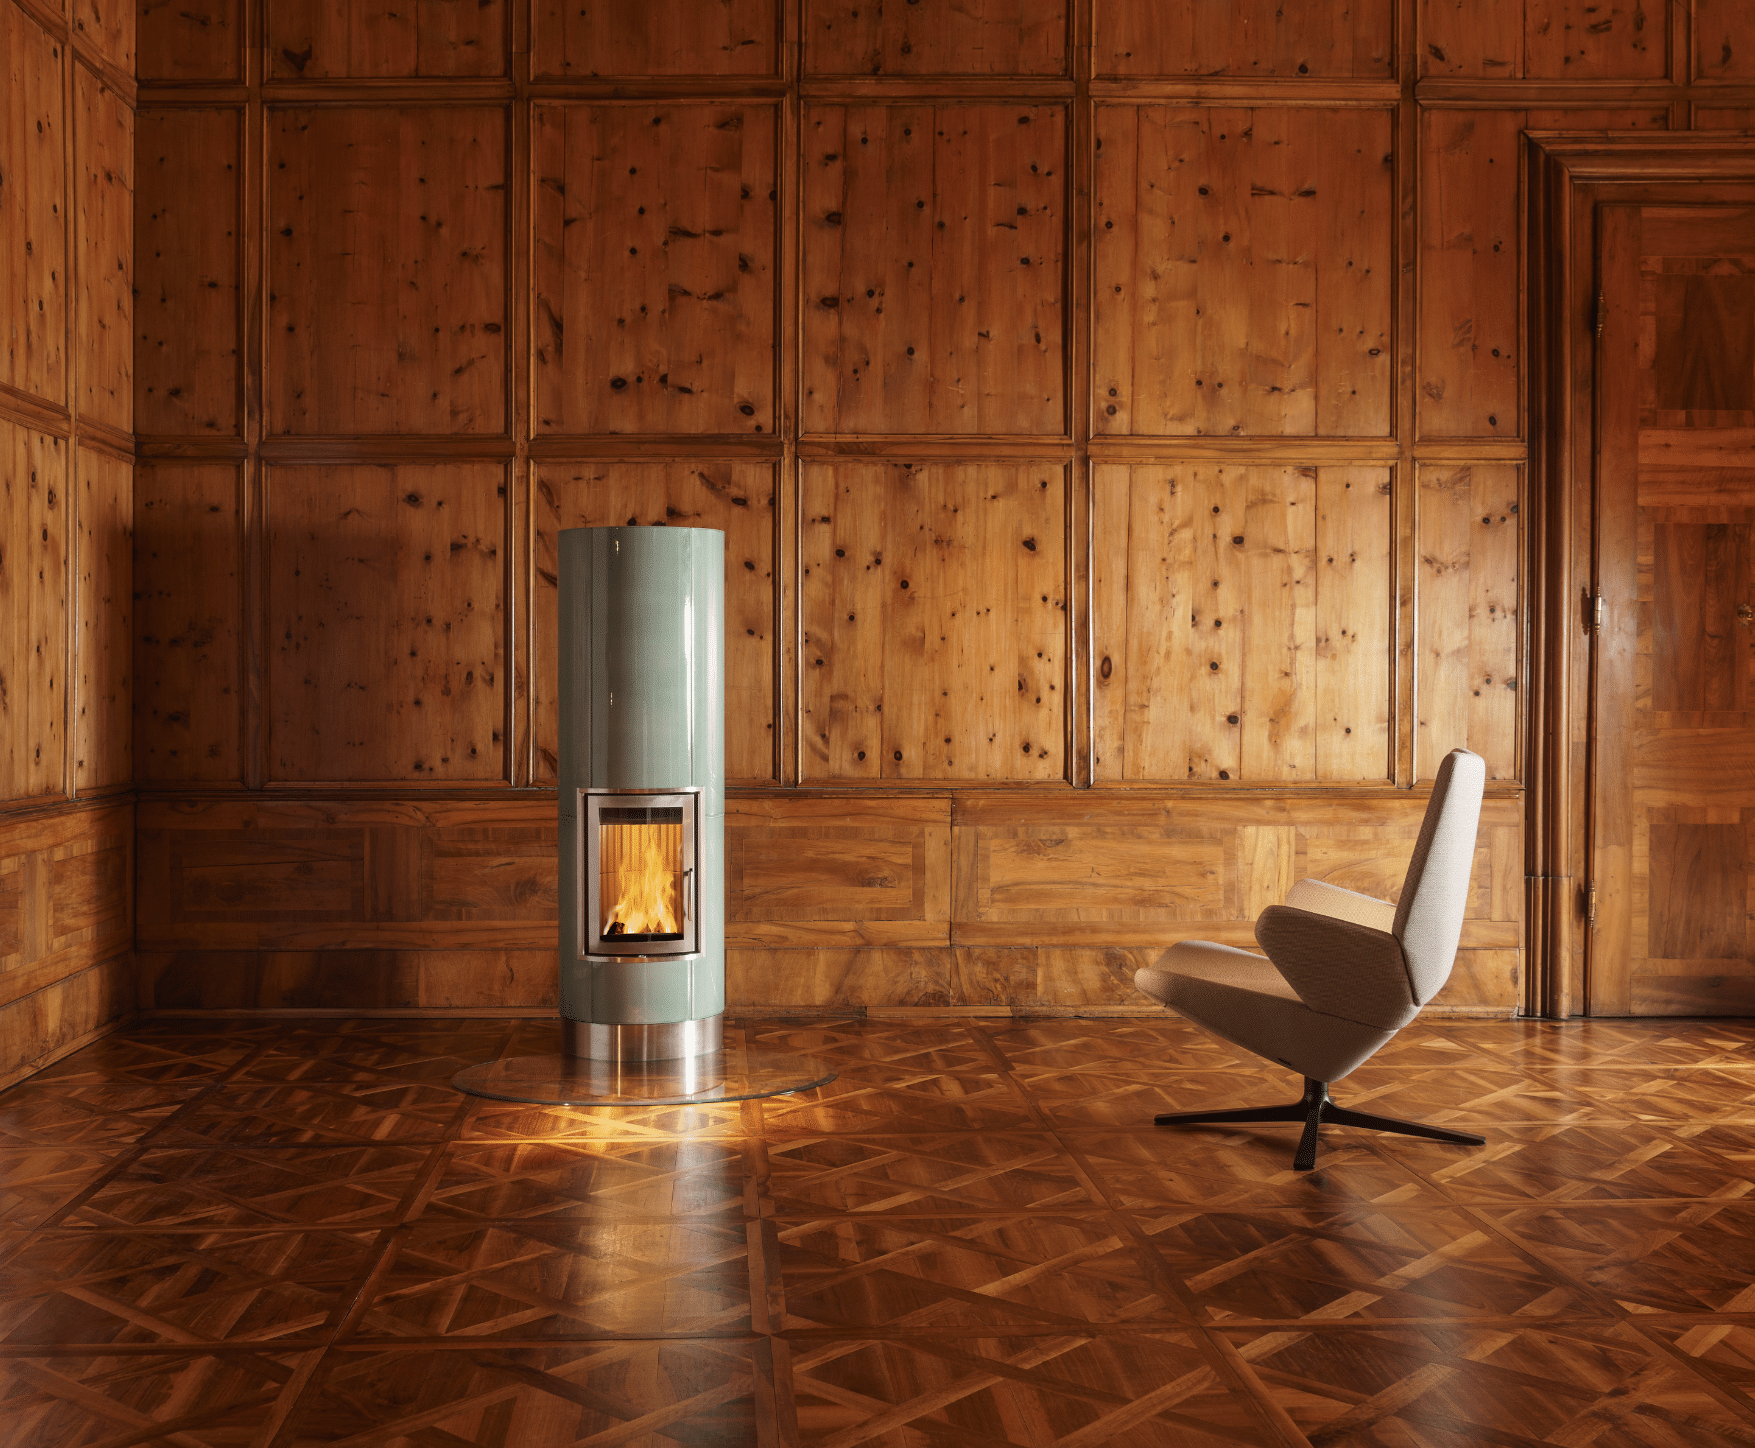 Sommerhuber zeigt einen Raum mit Holzvertäfelung an allen Wänden und gemustertem Holzboden mit einem Vollspeicherkachelofen in blassgrün und silber.